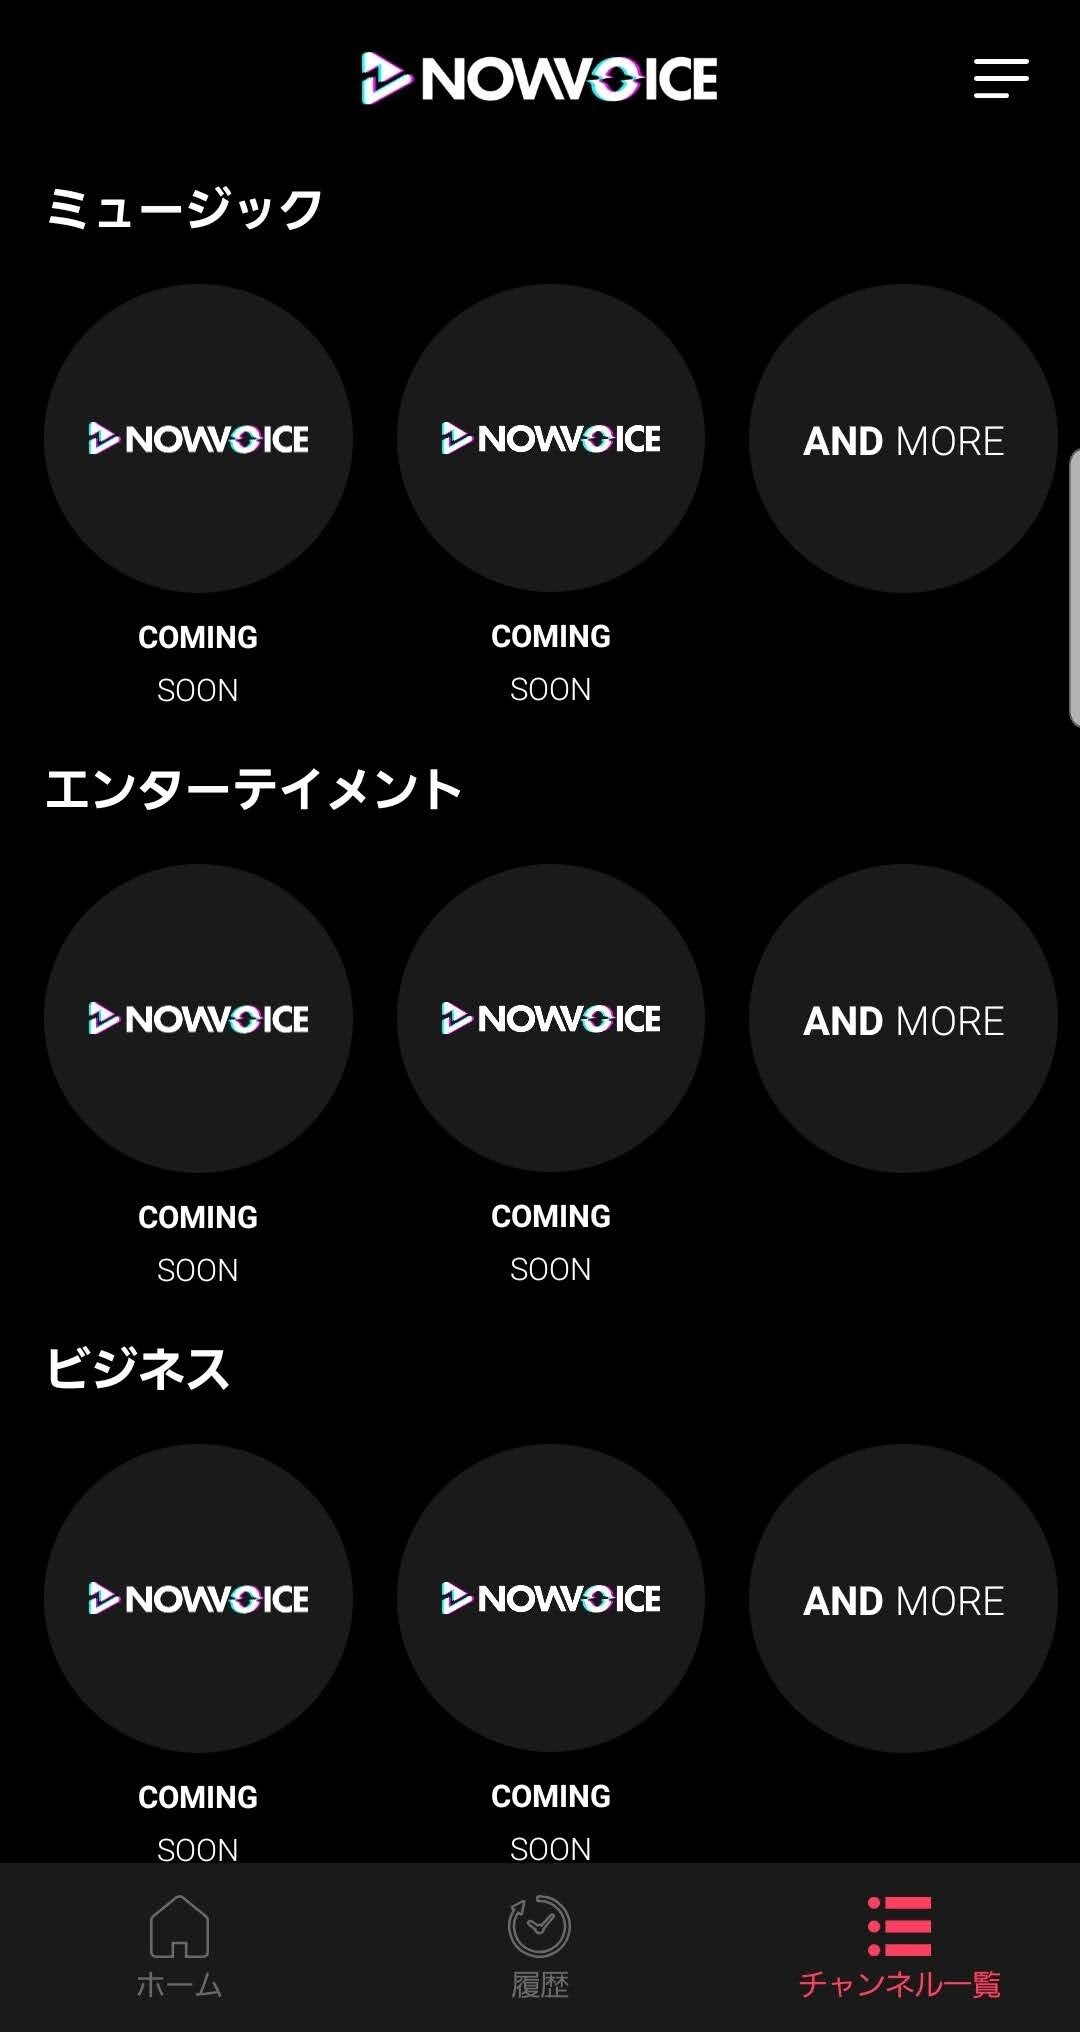 NowVoice comming